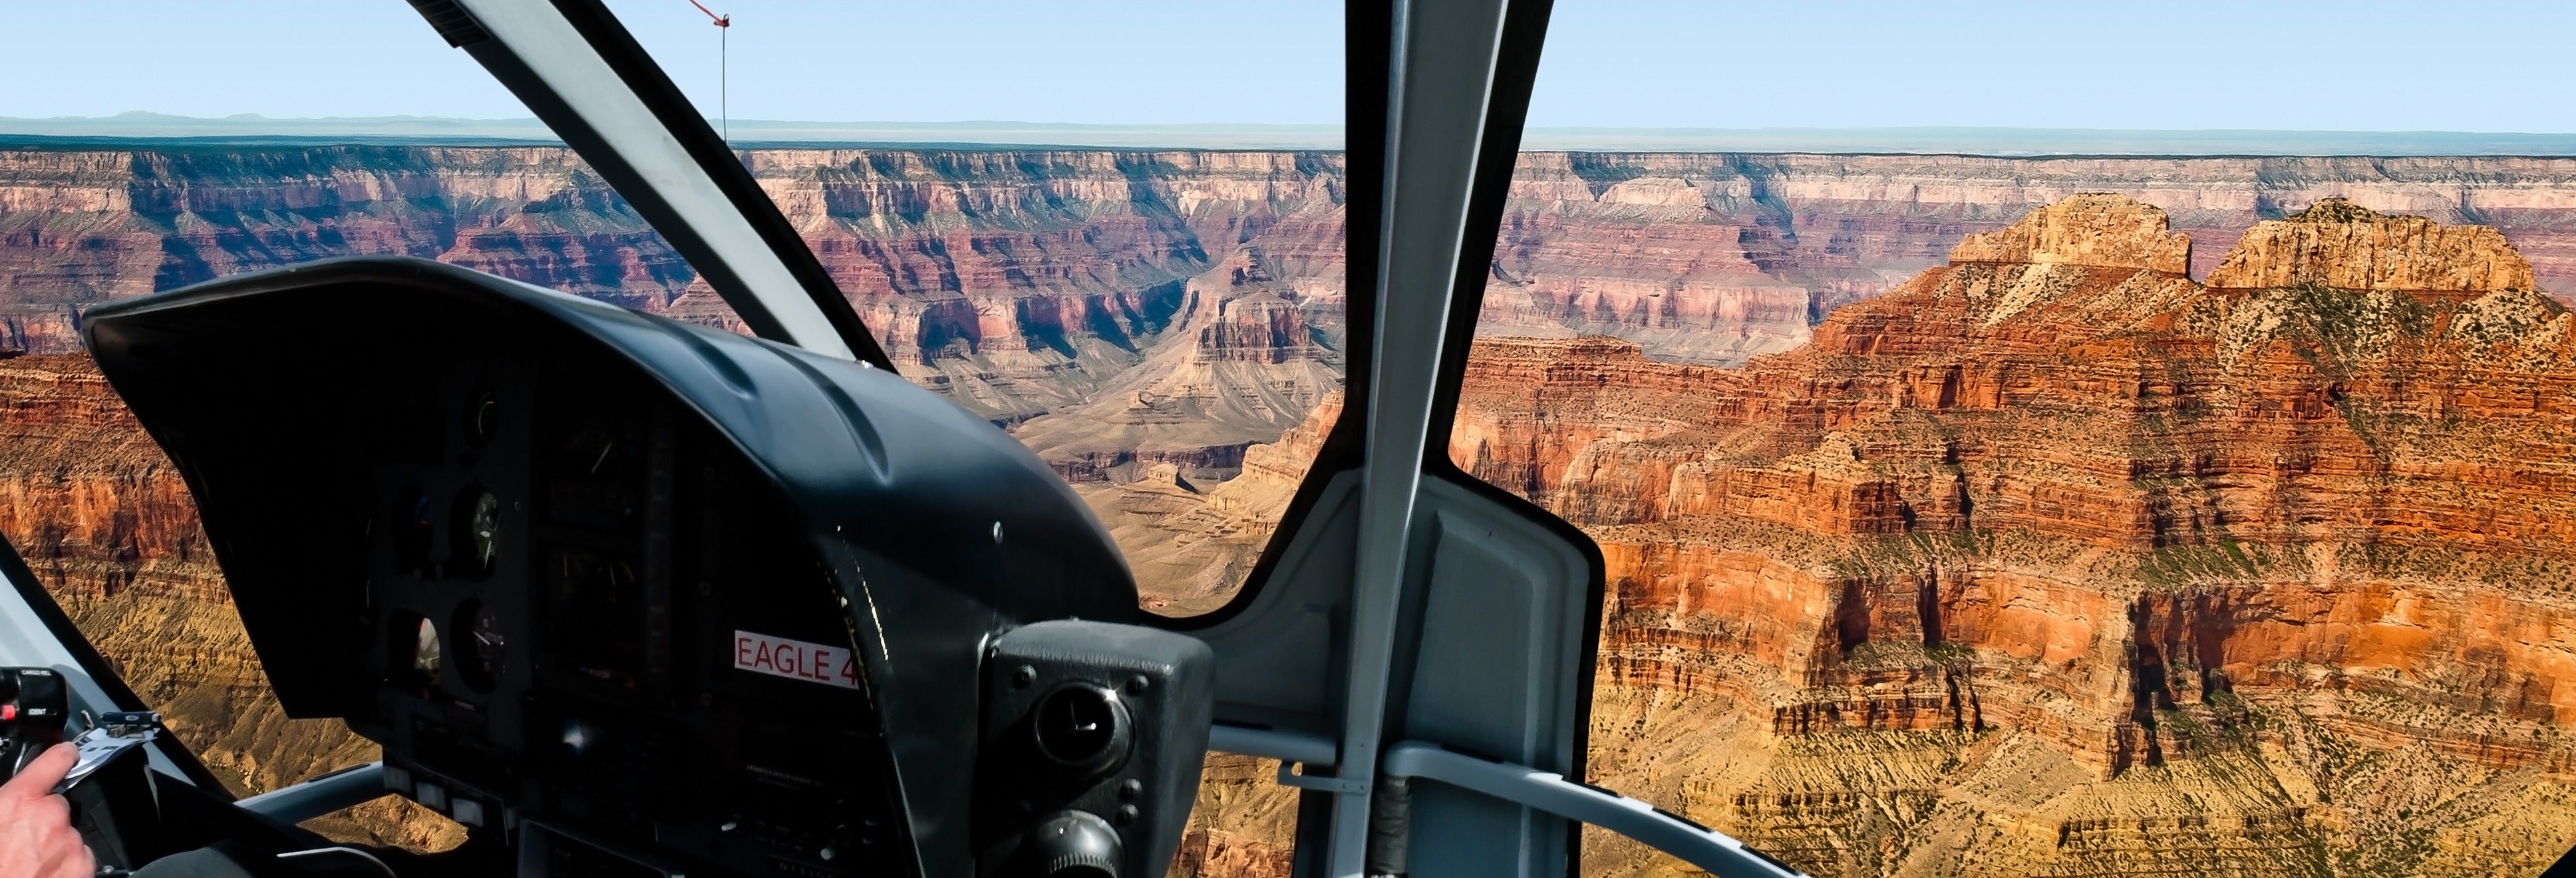 Excursión al Gran Cañón en helicóptero